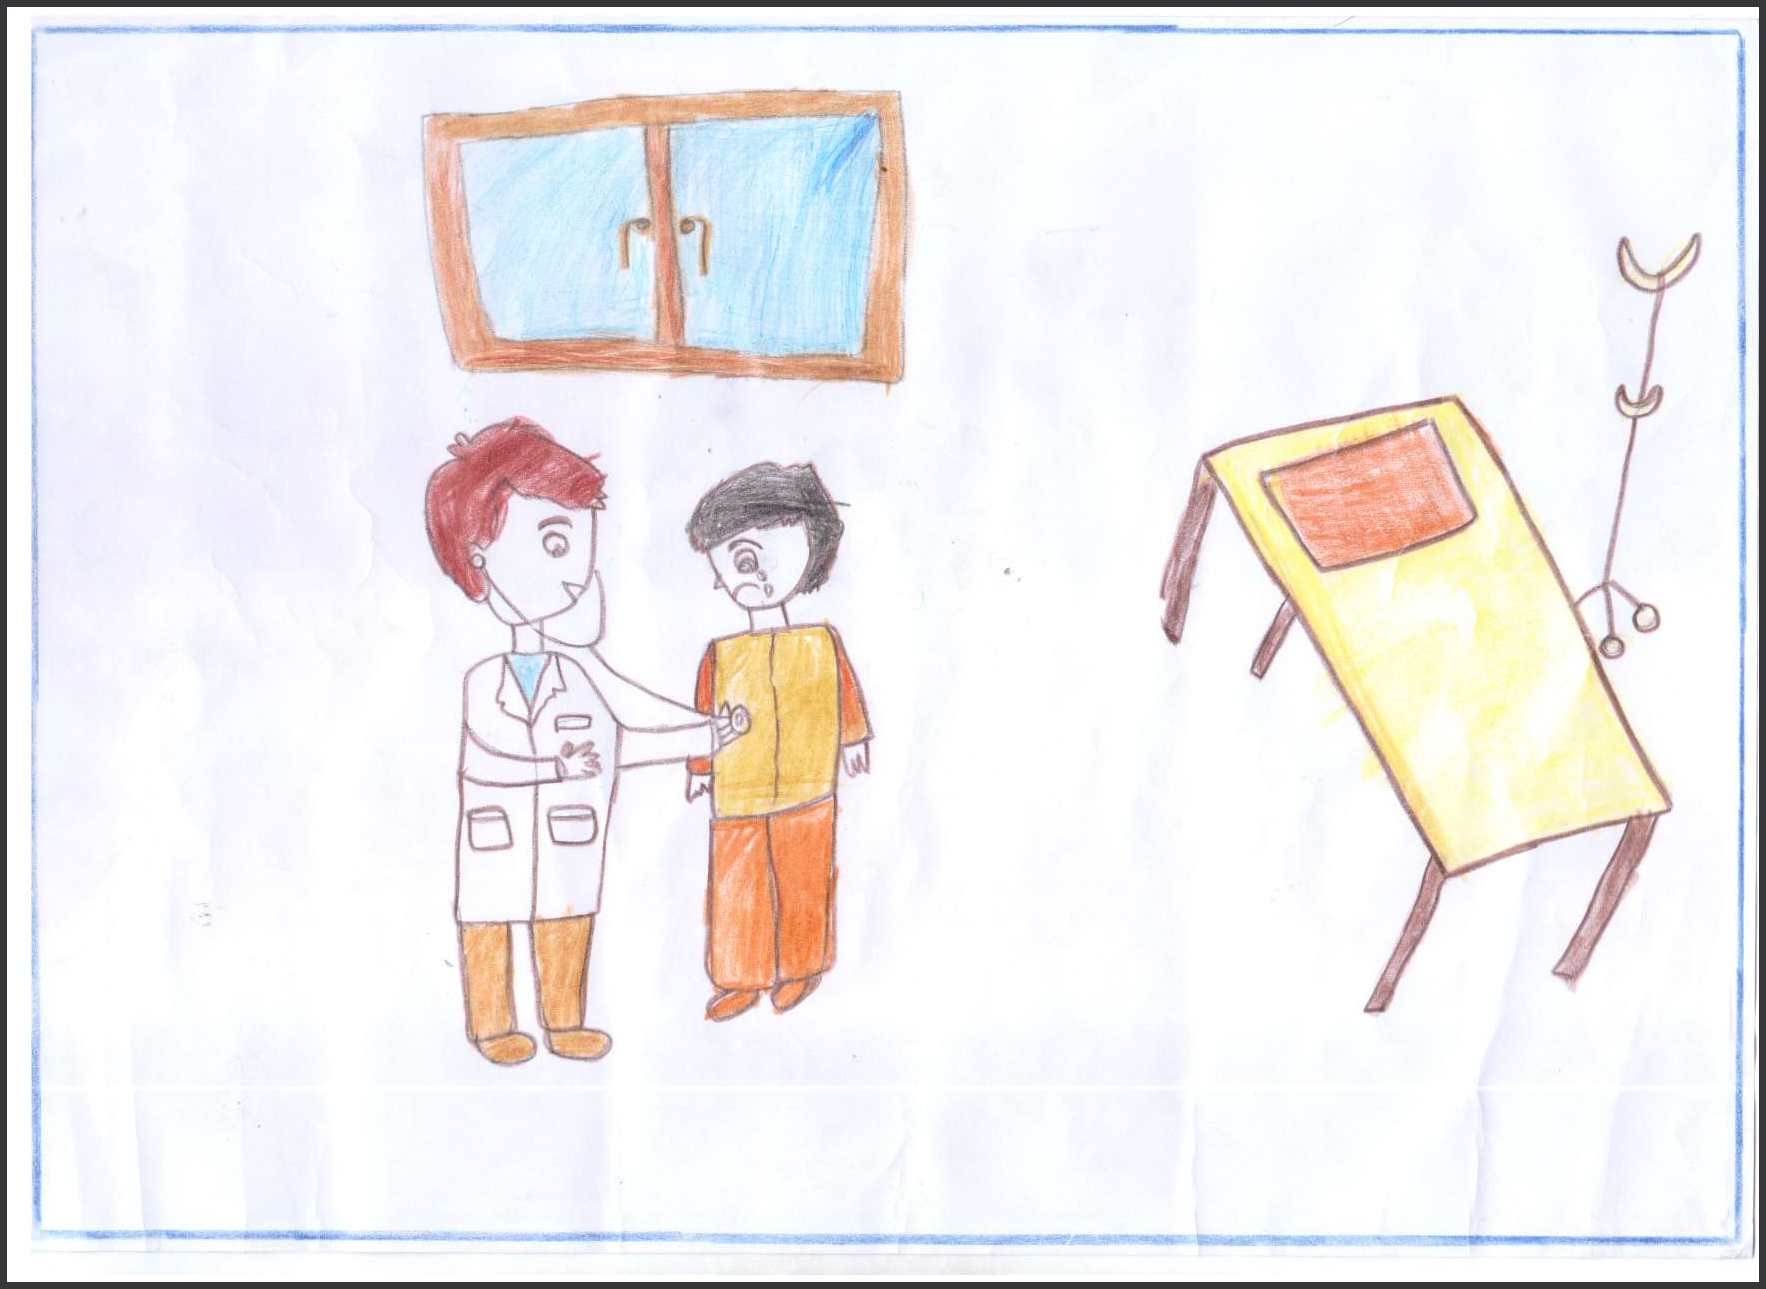 نقاشی شماره ۱۱- امیرمحمد حسینی ۷ ساله – موضوع :رویای من (دوست دارم پزشک شوم)